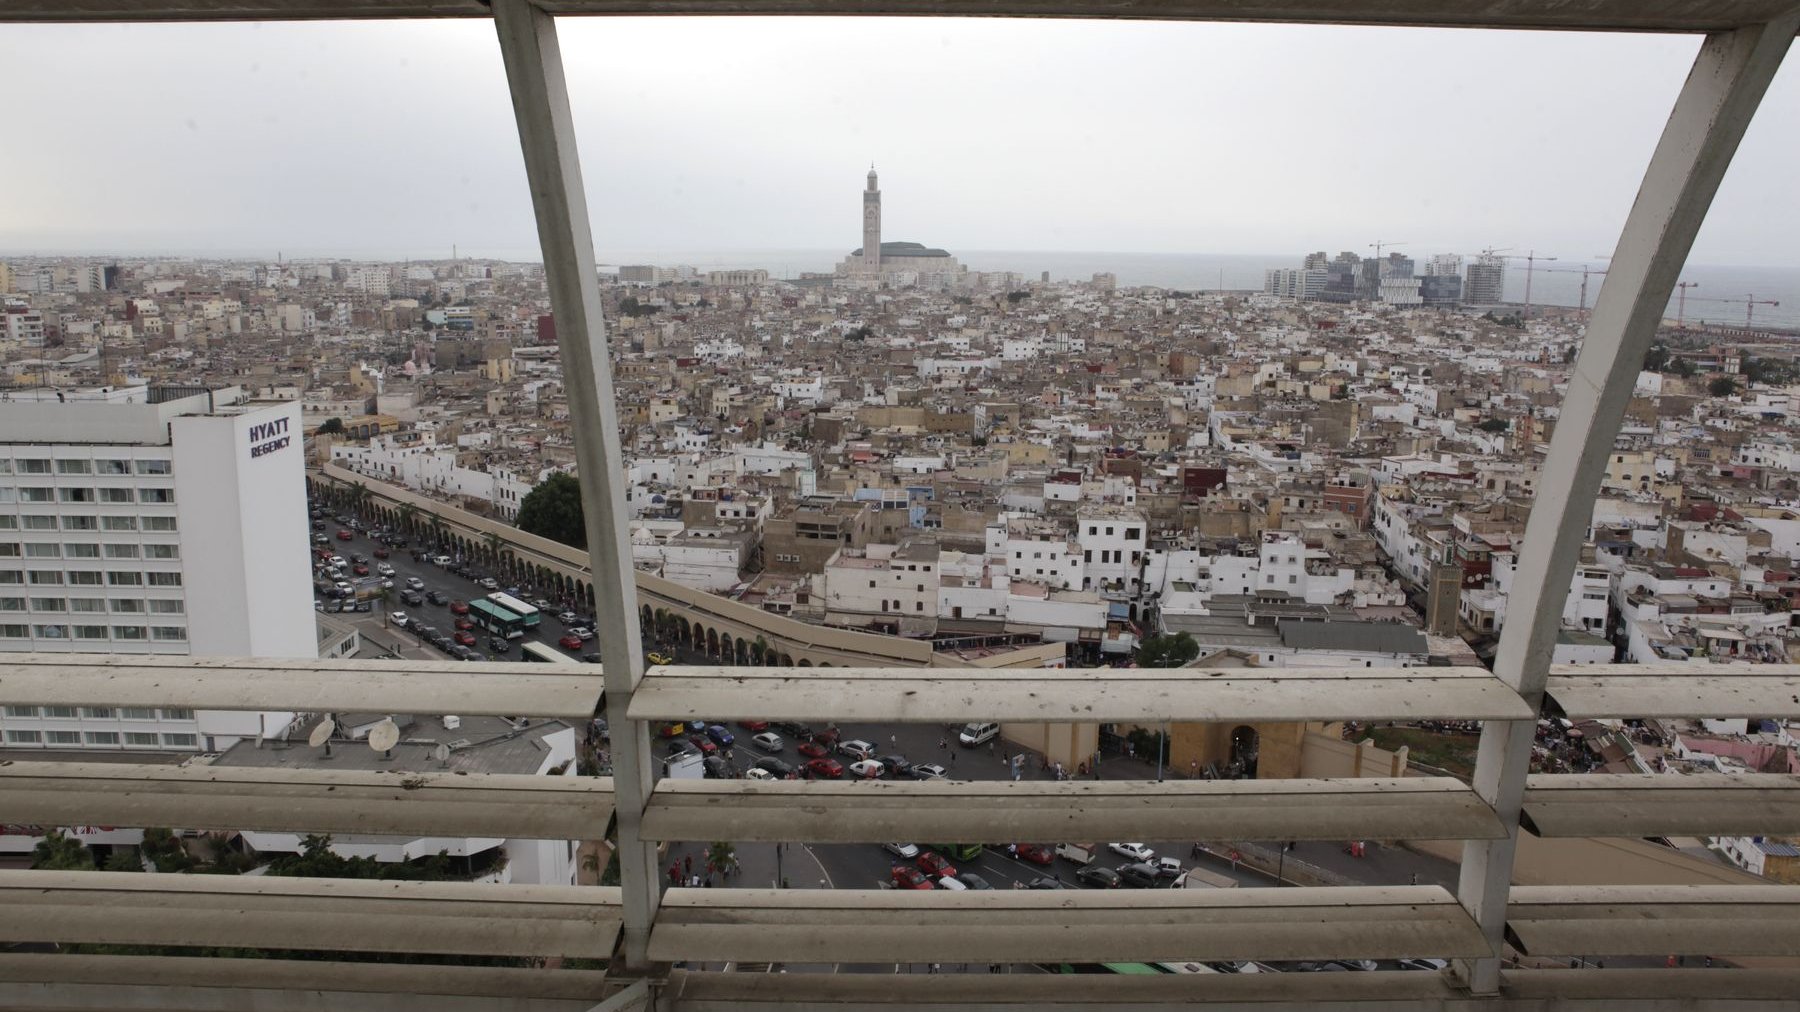 Une vue panoramique de Casablanca. Bâtiments luxueux et amas de petits carrés de sucre encastrés et chaotiquement amalgamés. Déferlentes de voitures. Vue d'en haut, coupée de ses bruits, la ville offre un spectacle surréaliste.  
